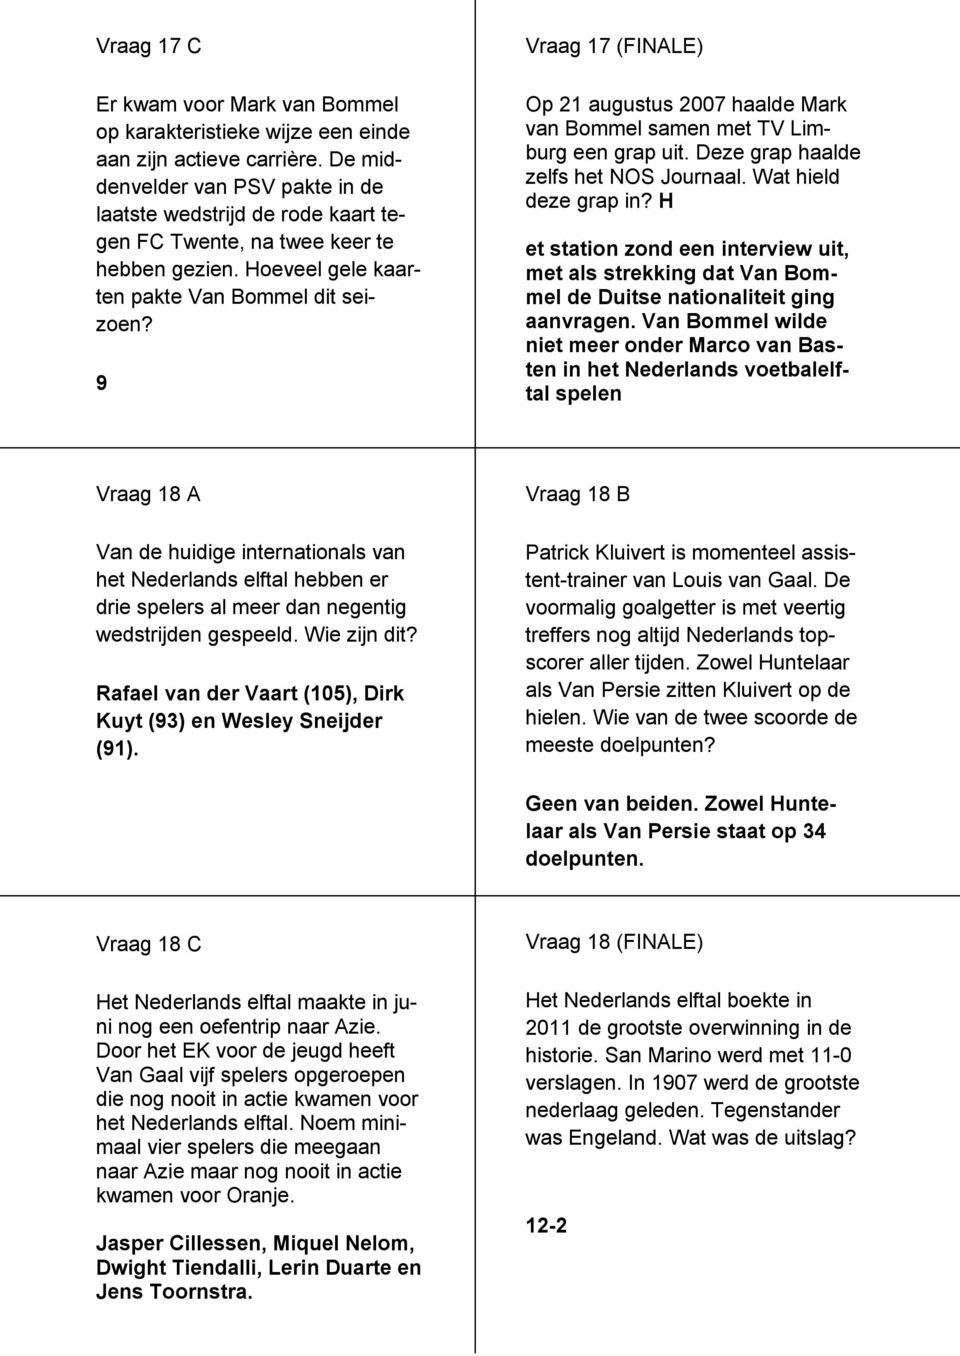 9 Vraag 17 (FINALE) Op 21 augustus 2007 haalde Mark van Bommel samen met TV Limburg een grap uit. Deze grap haalde zelfs het NOS Journaal. Wat hield deze grap in?